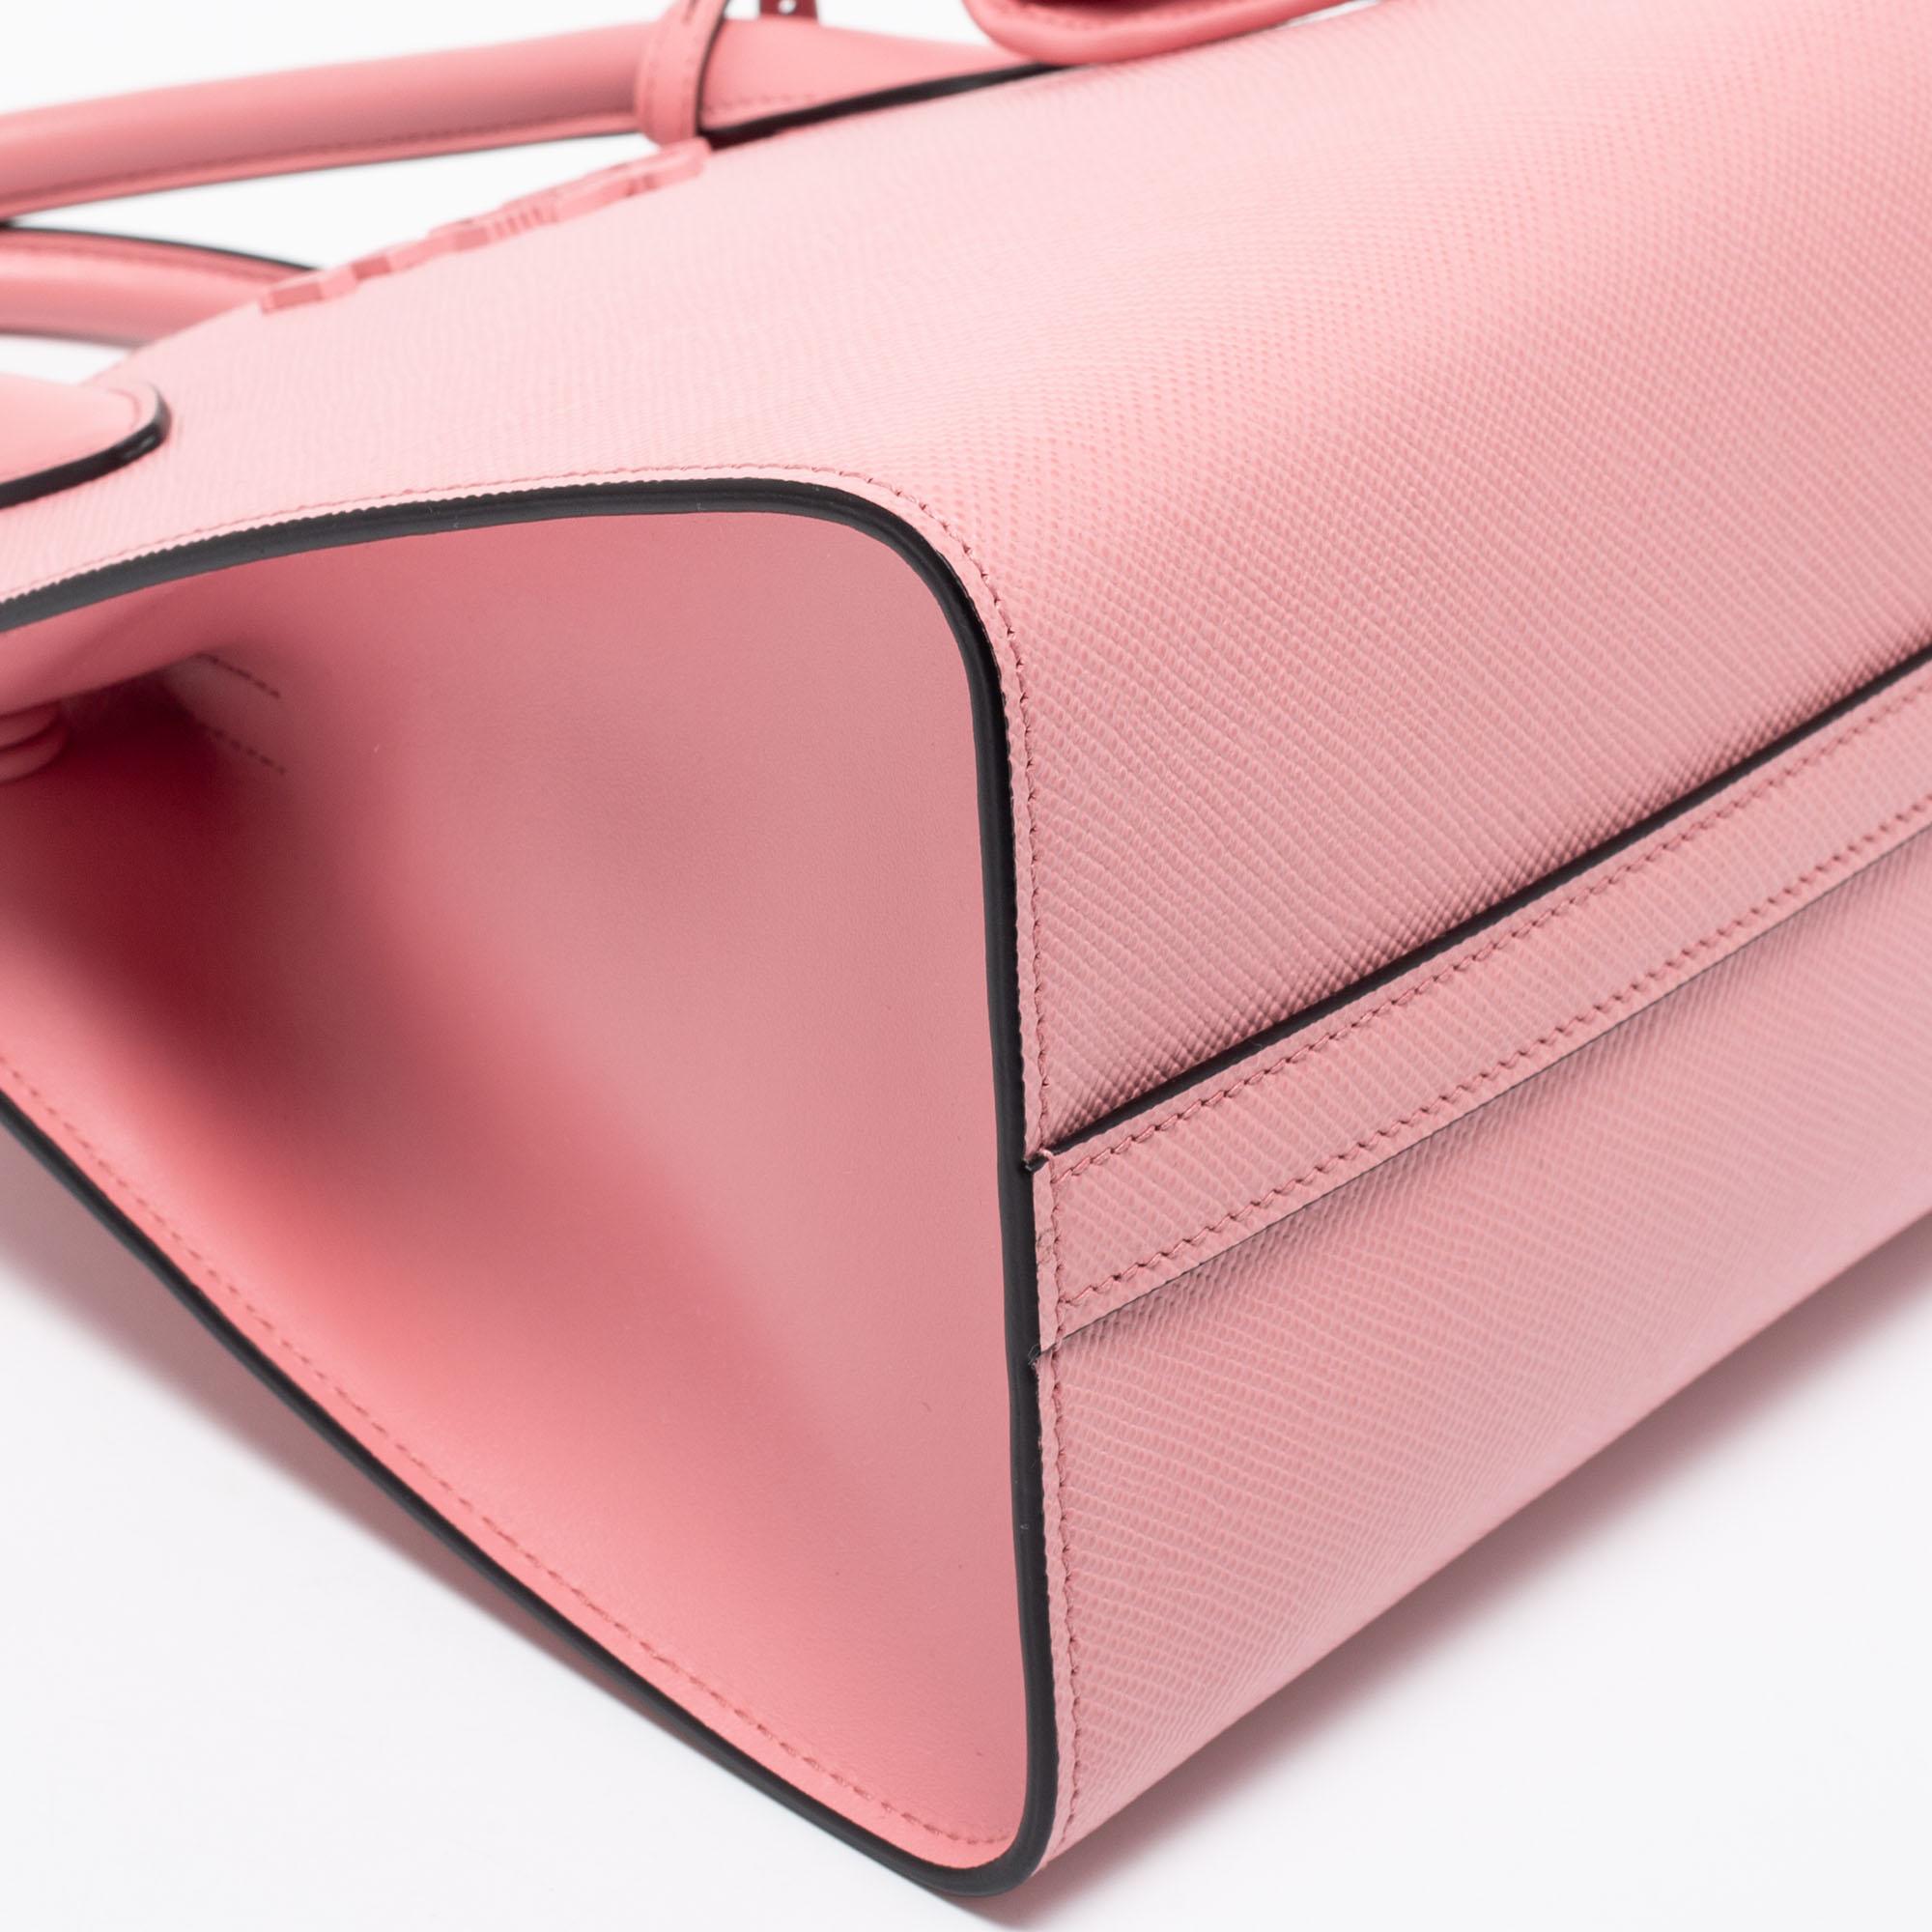 Prada Pink Saffiano Cuir Leather Small Monochrome Tote 5